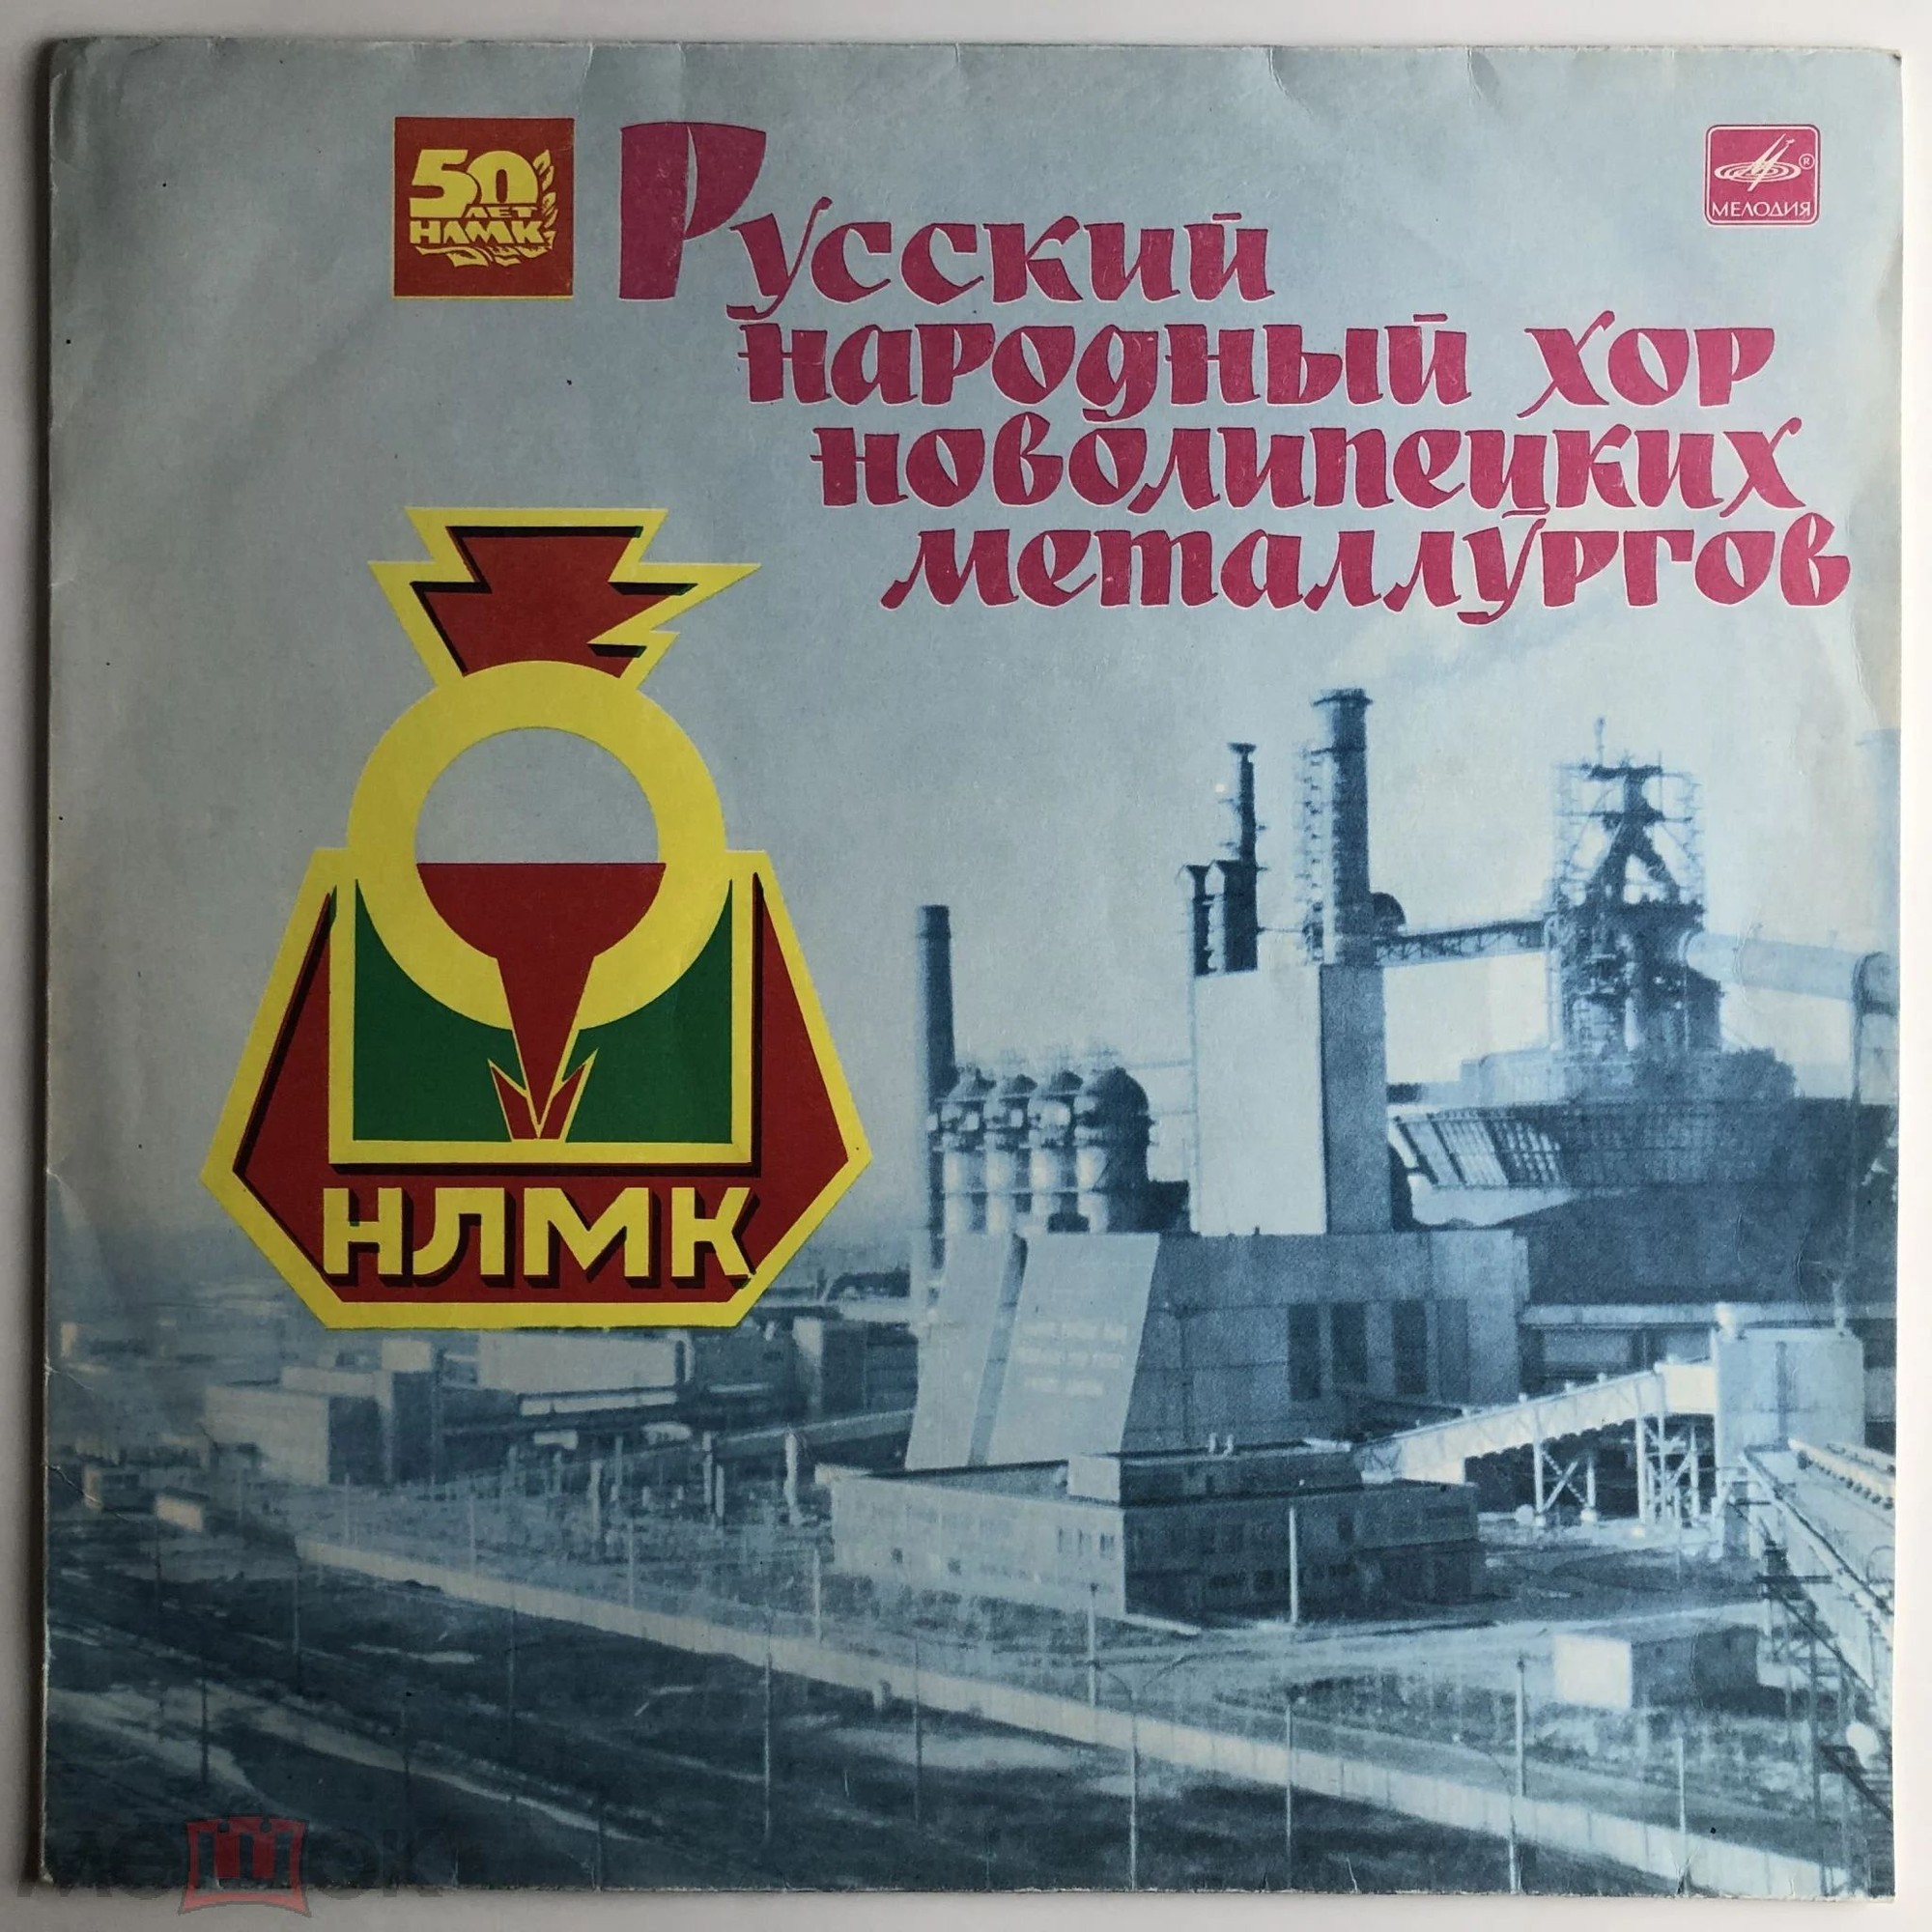 Русский народный хор новолипецких металлургов. 50 лет НЛМК